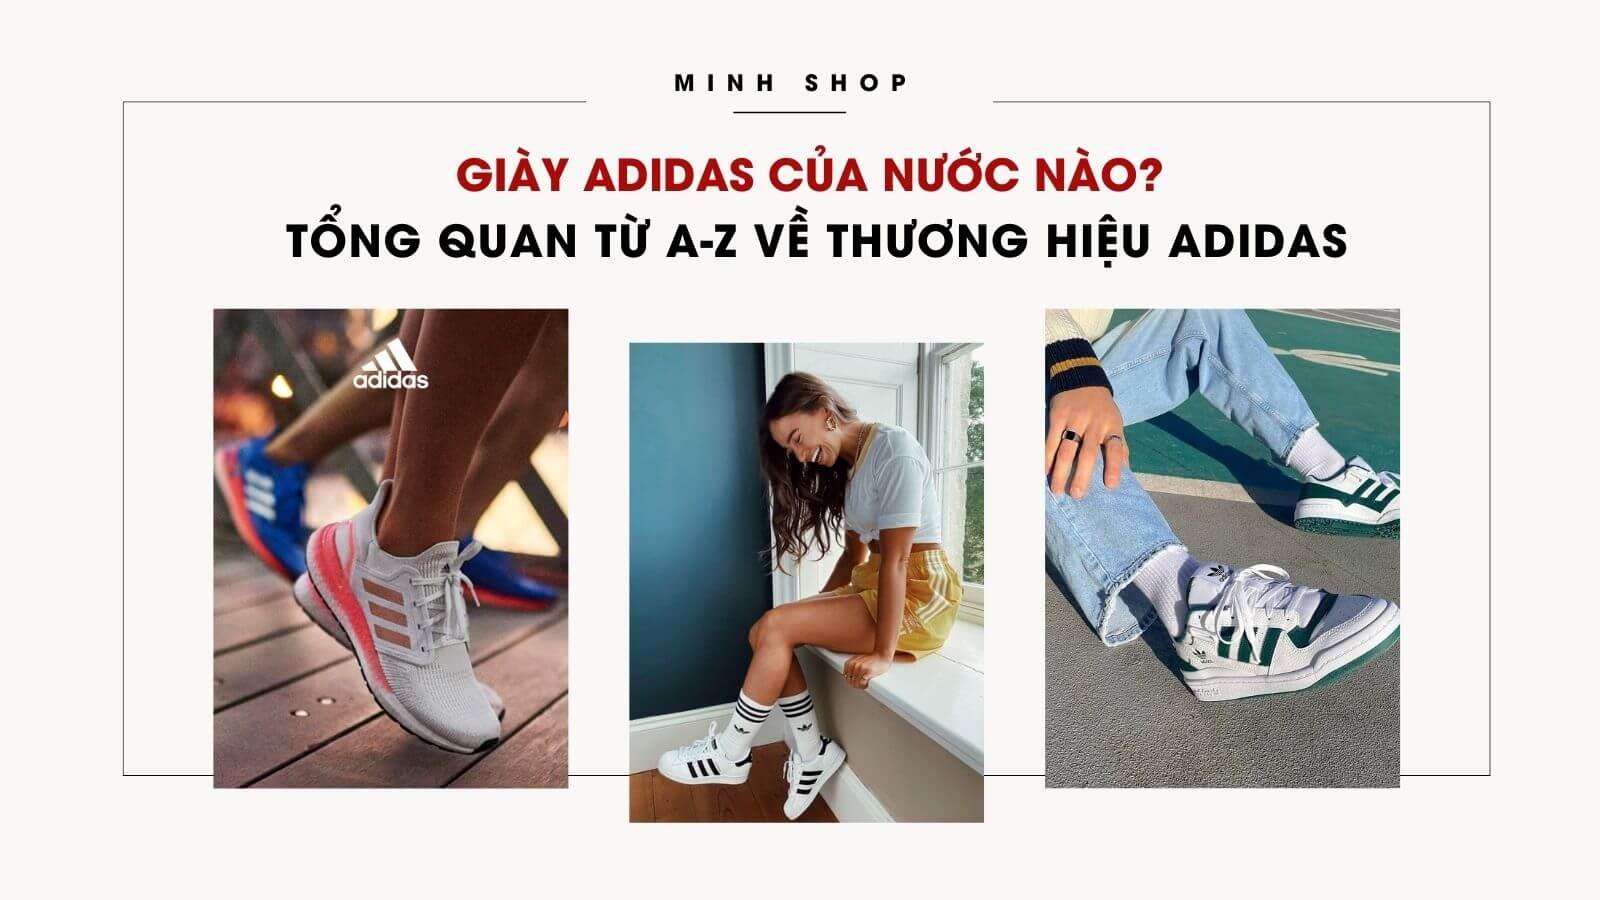 /bai-viet/giay-adidas-cua-nuoc-nao-tong-quan-tu-a-z-ve-thuong-hieu-adidas/277